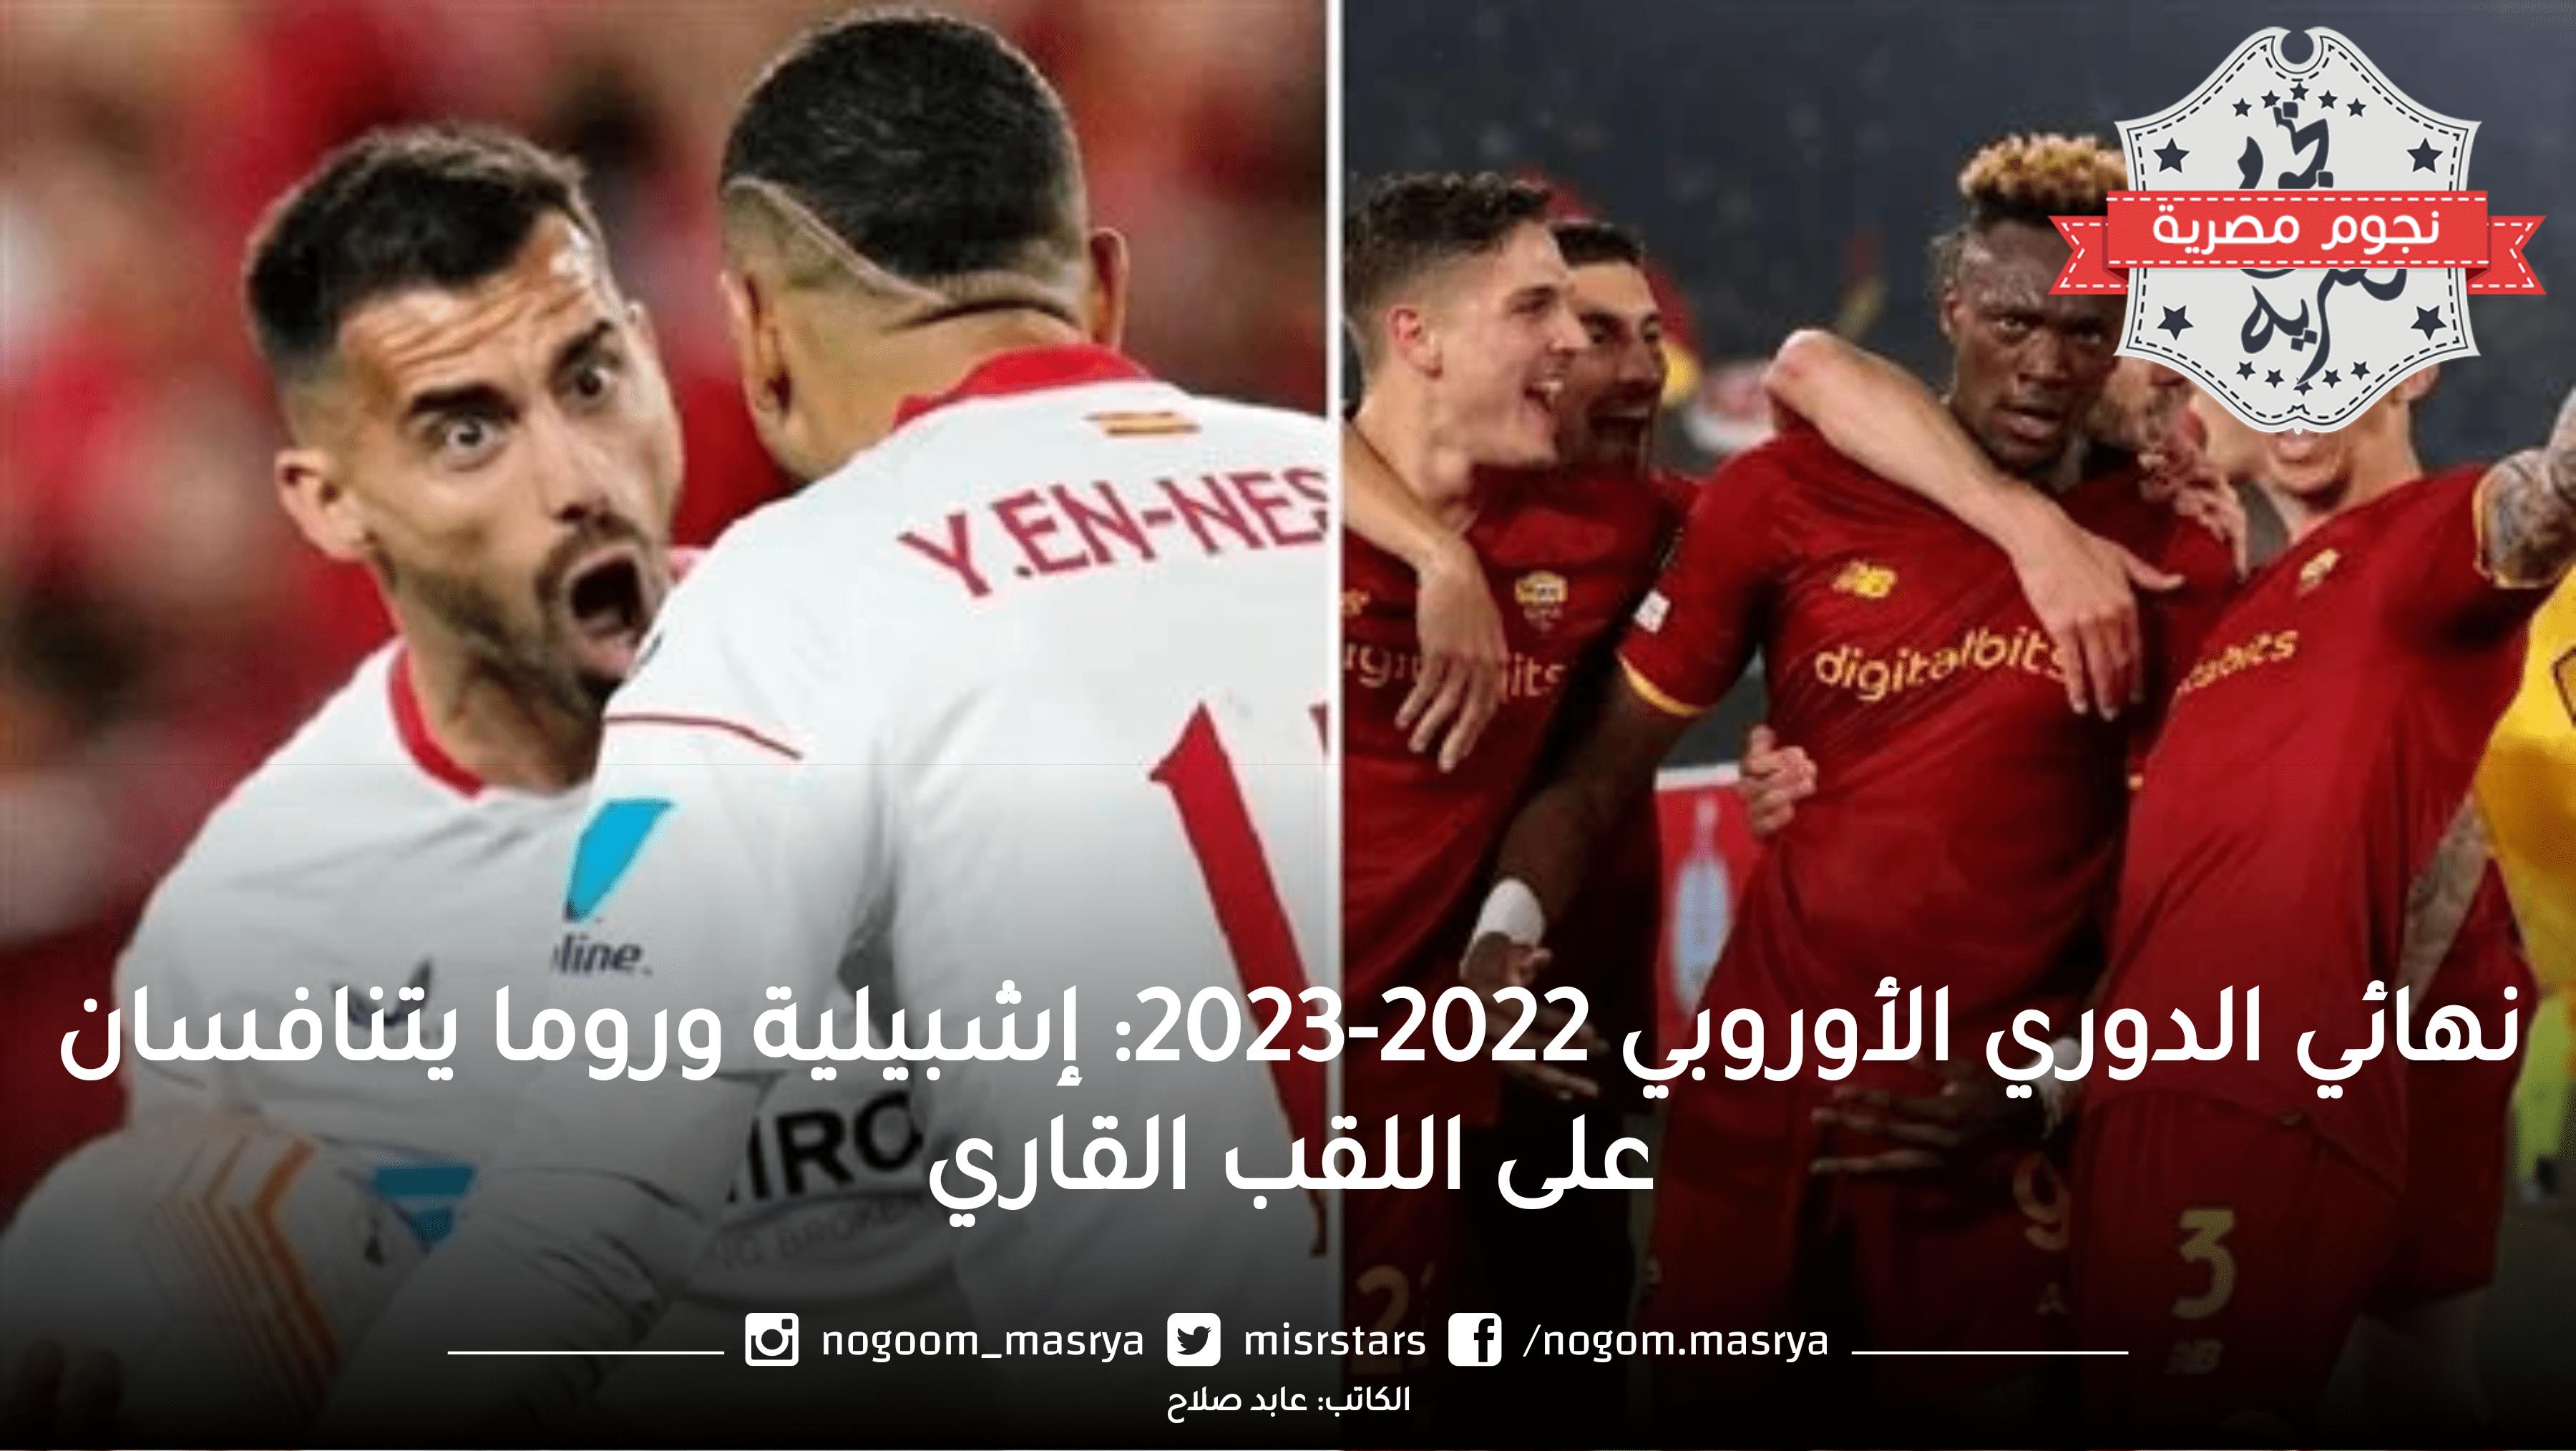 نهائي الدوري الأوروبي 2022-2023: إشبيلية وروما يتنافسان على اللقب القاري